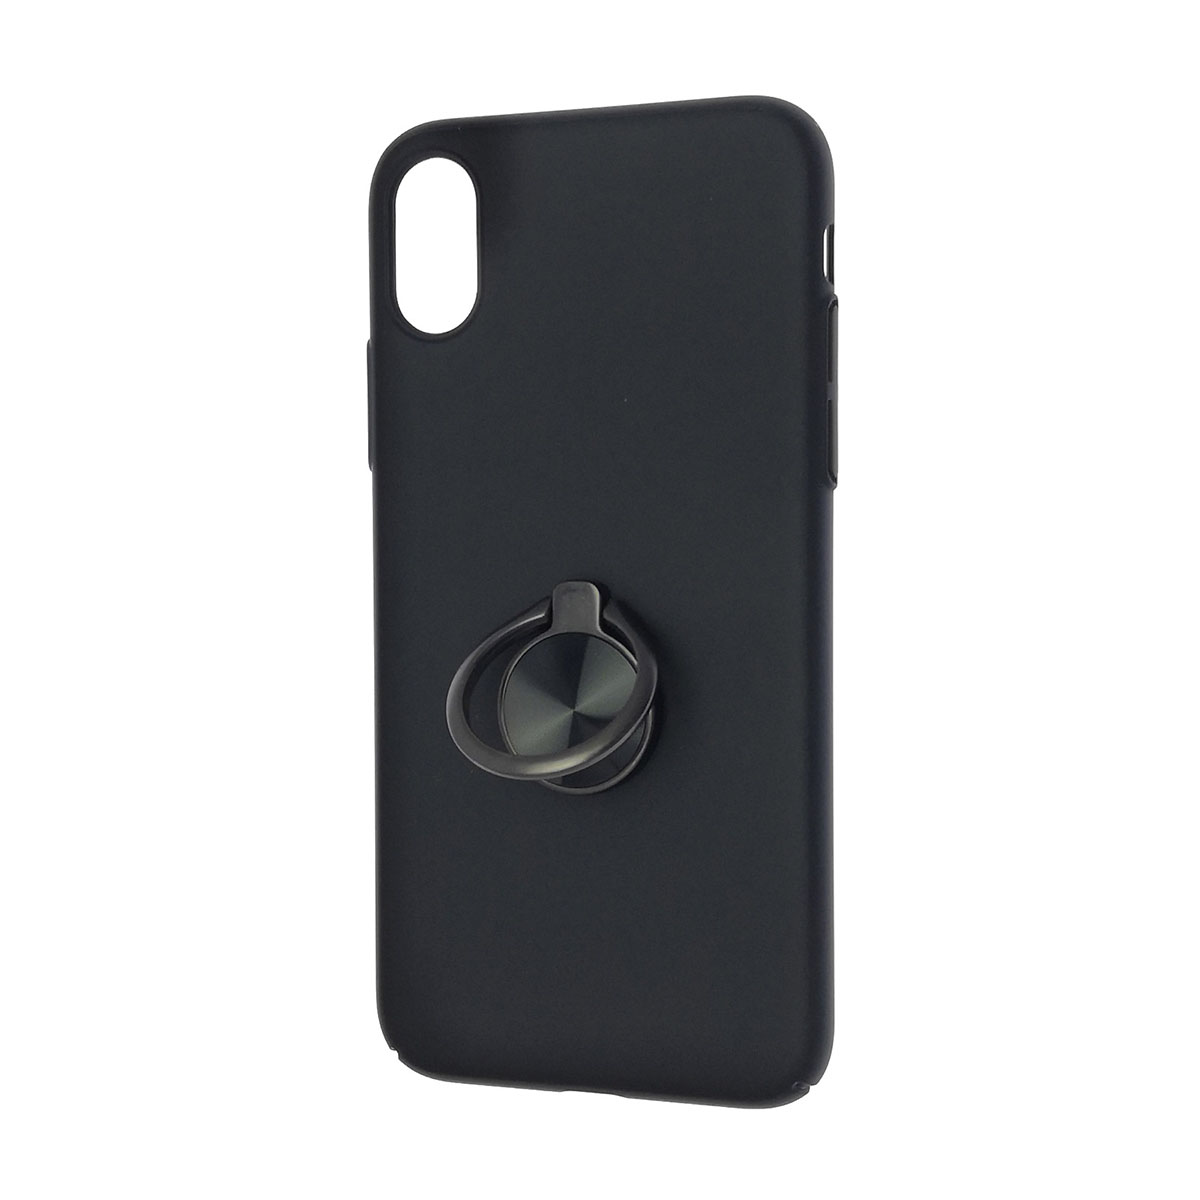 Чехол накладка BASEUS для APPLE iPhone X, силикон, кольцо держатель, цвет черный.